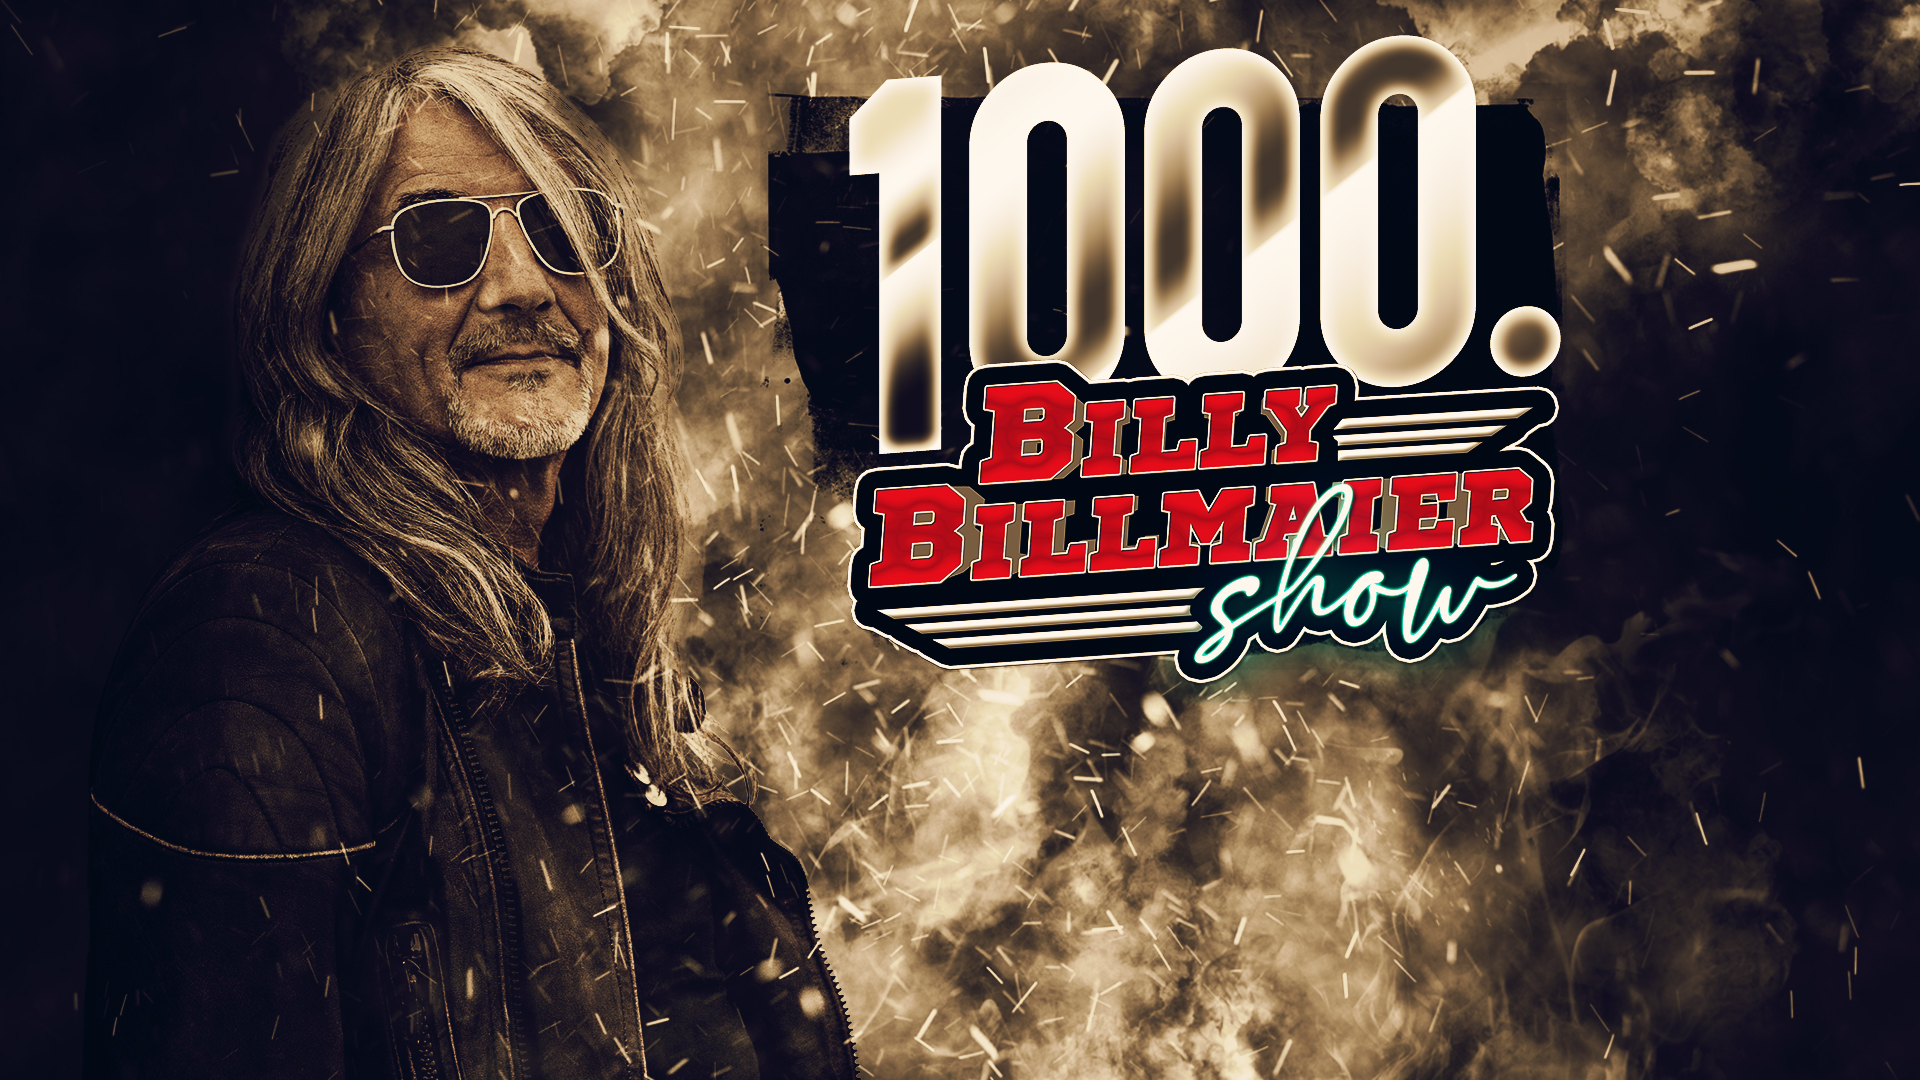 Die 1000. Billy Billmaier Show